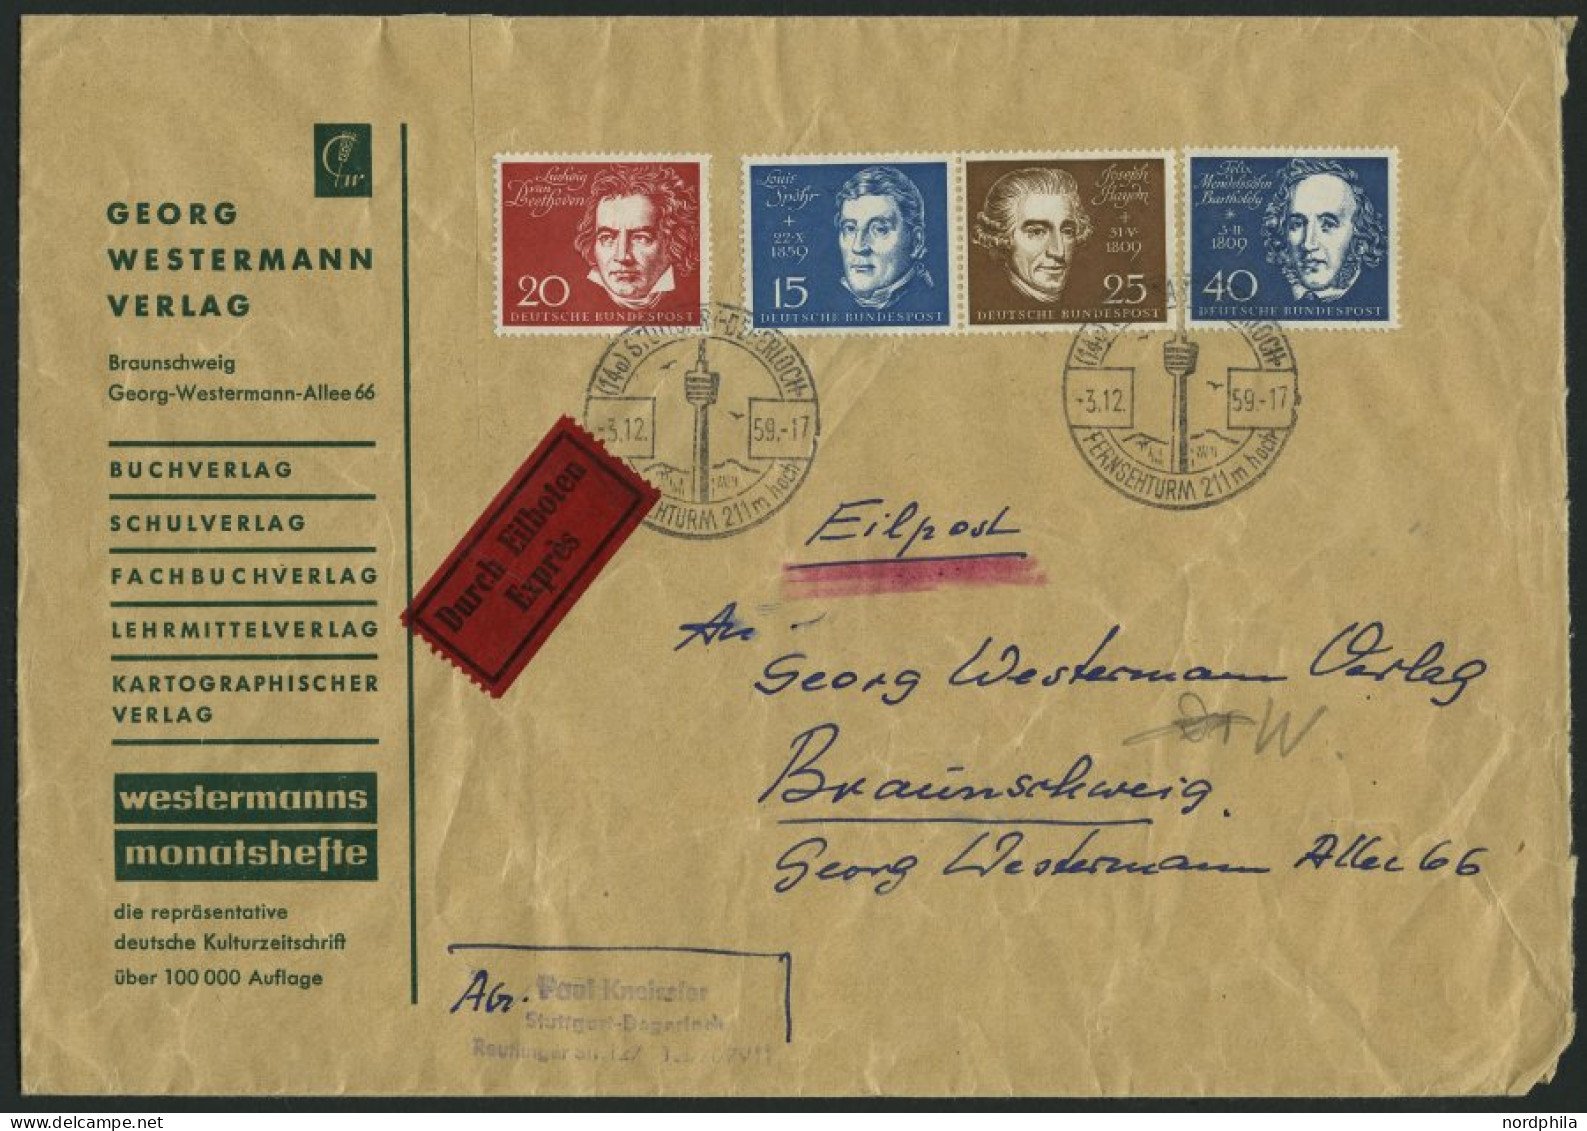 SAMMLUNGEN o, BRIEF, gestempelte Sammlung Bund von 1949-87 im Schaubek-Album, dabei diverse Briefe, anfangs lückenhaft, 